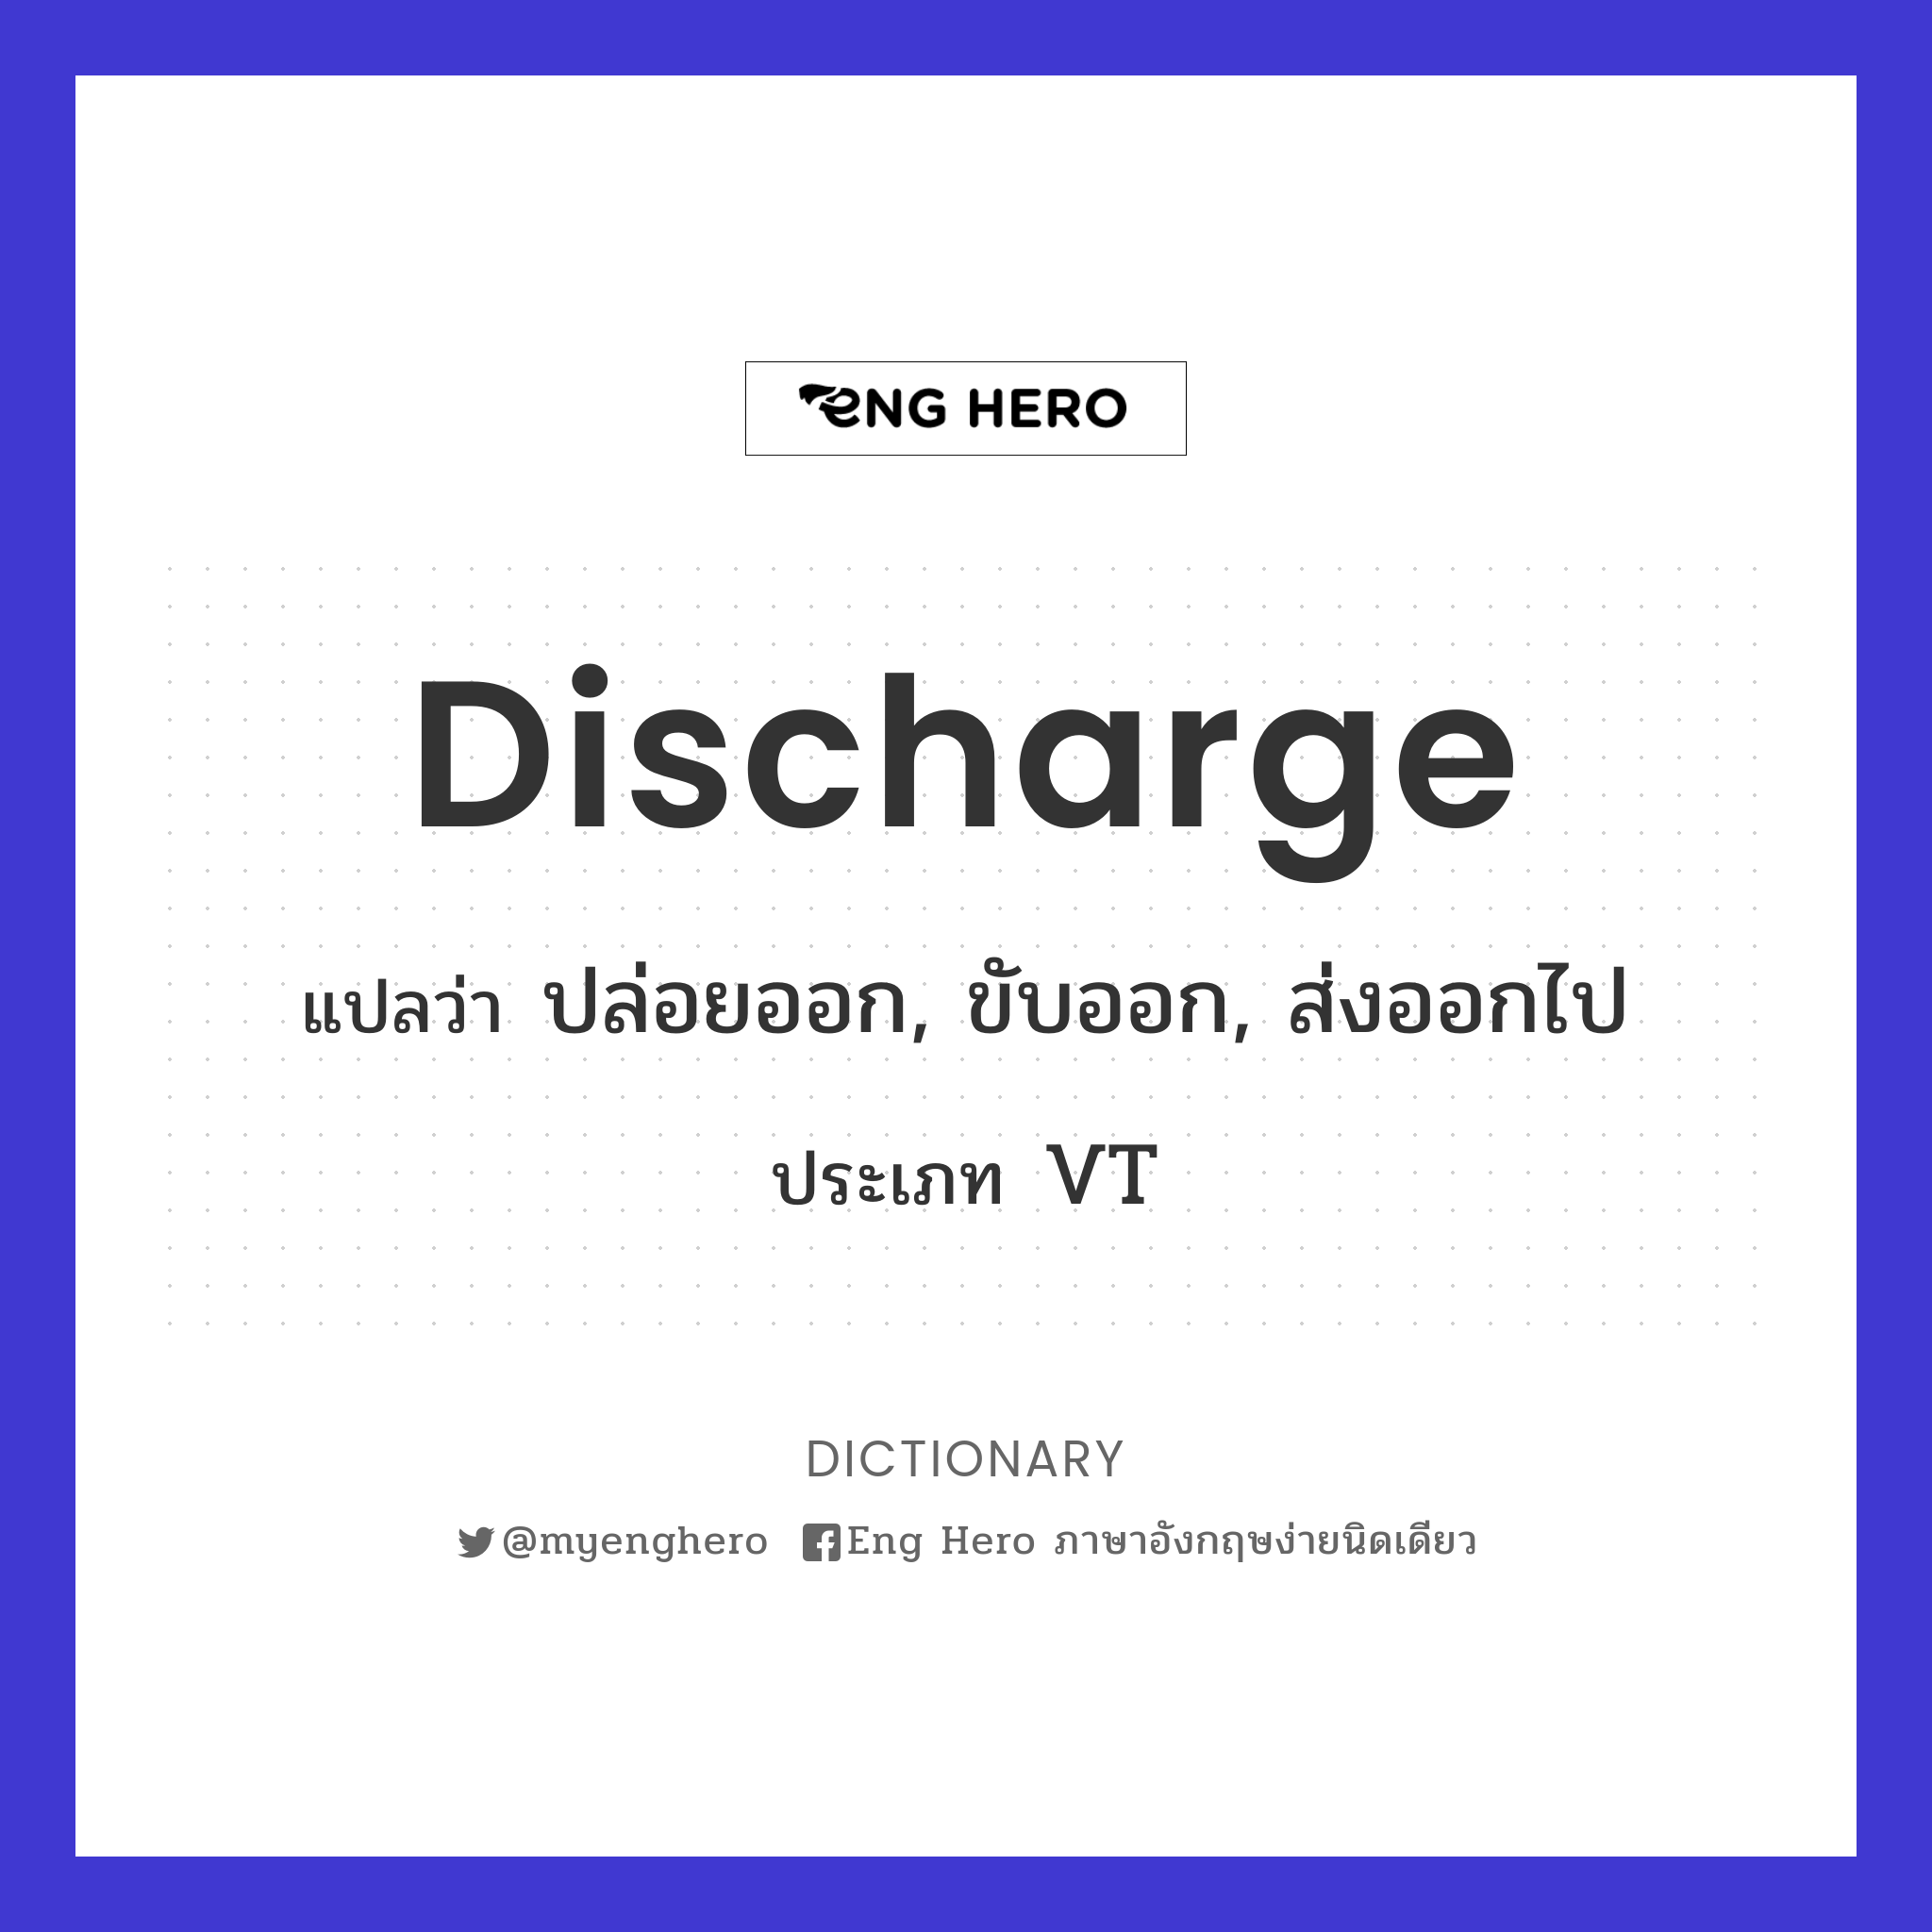 discharge